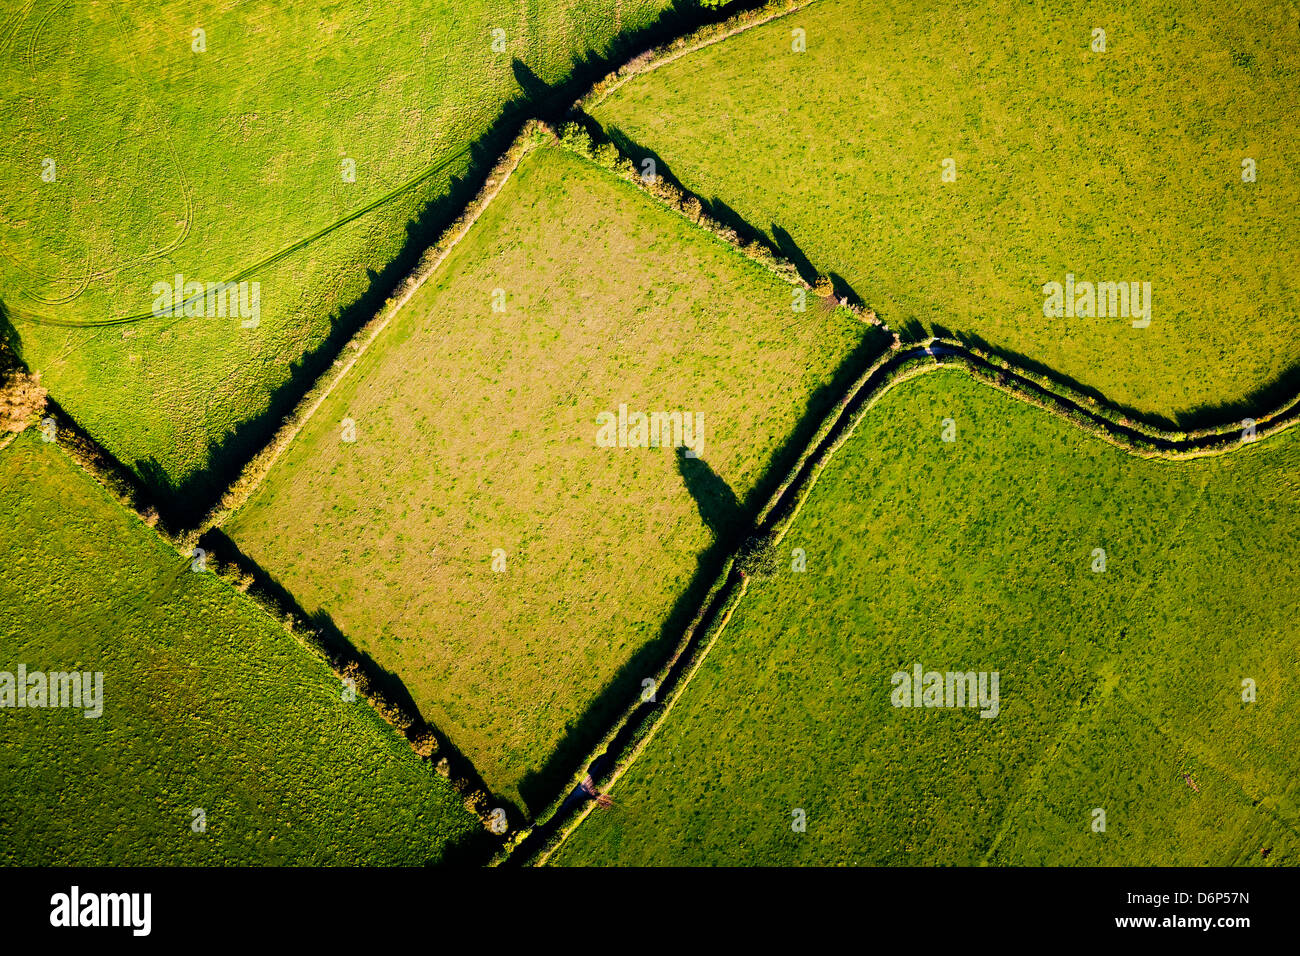 Vista aérea mostrando líneas y formas geométricas hechas por los límites de campo en la campiña británica. Foto de stock